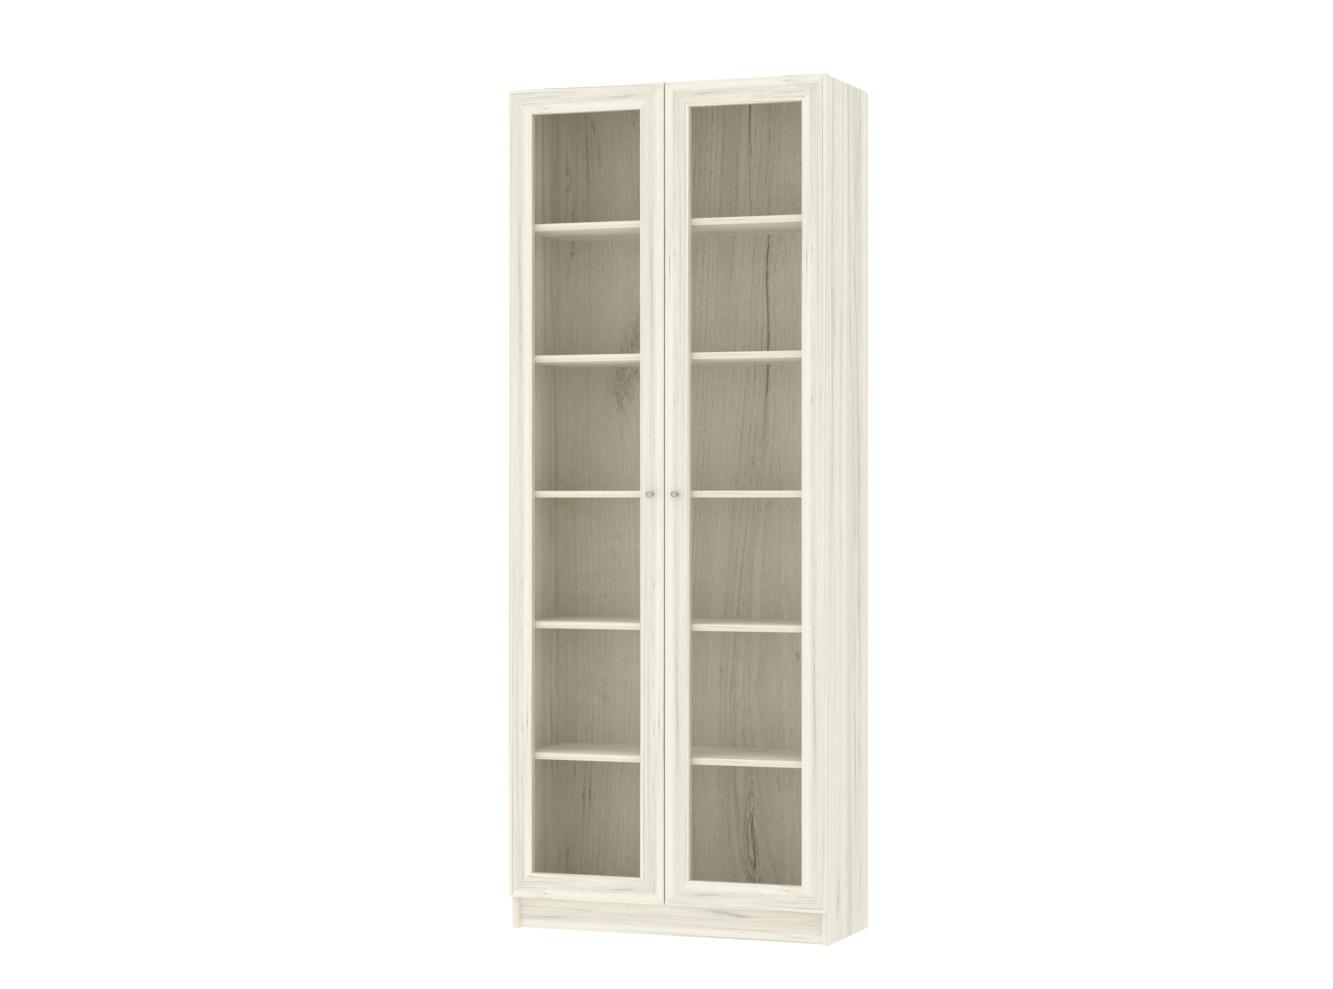  Книжный шкаф Билли 336 oak white craft ИКЕА (IKEA) изображение товара